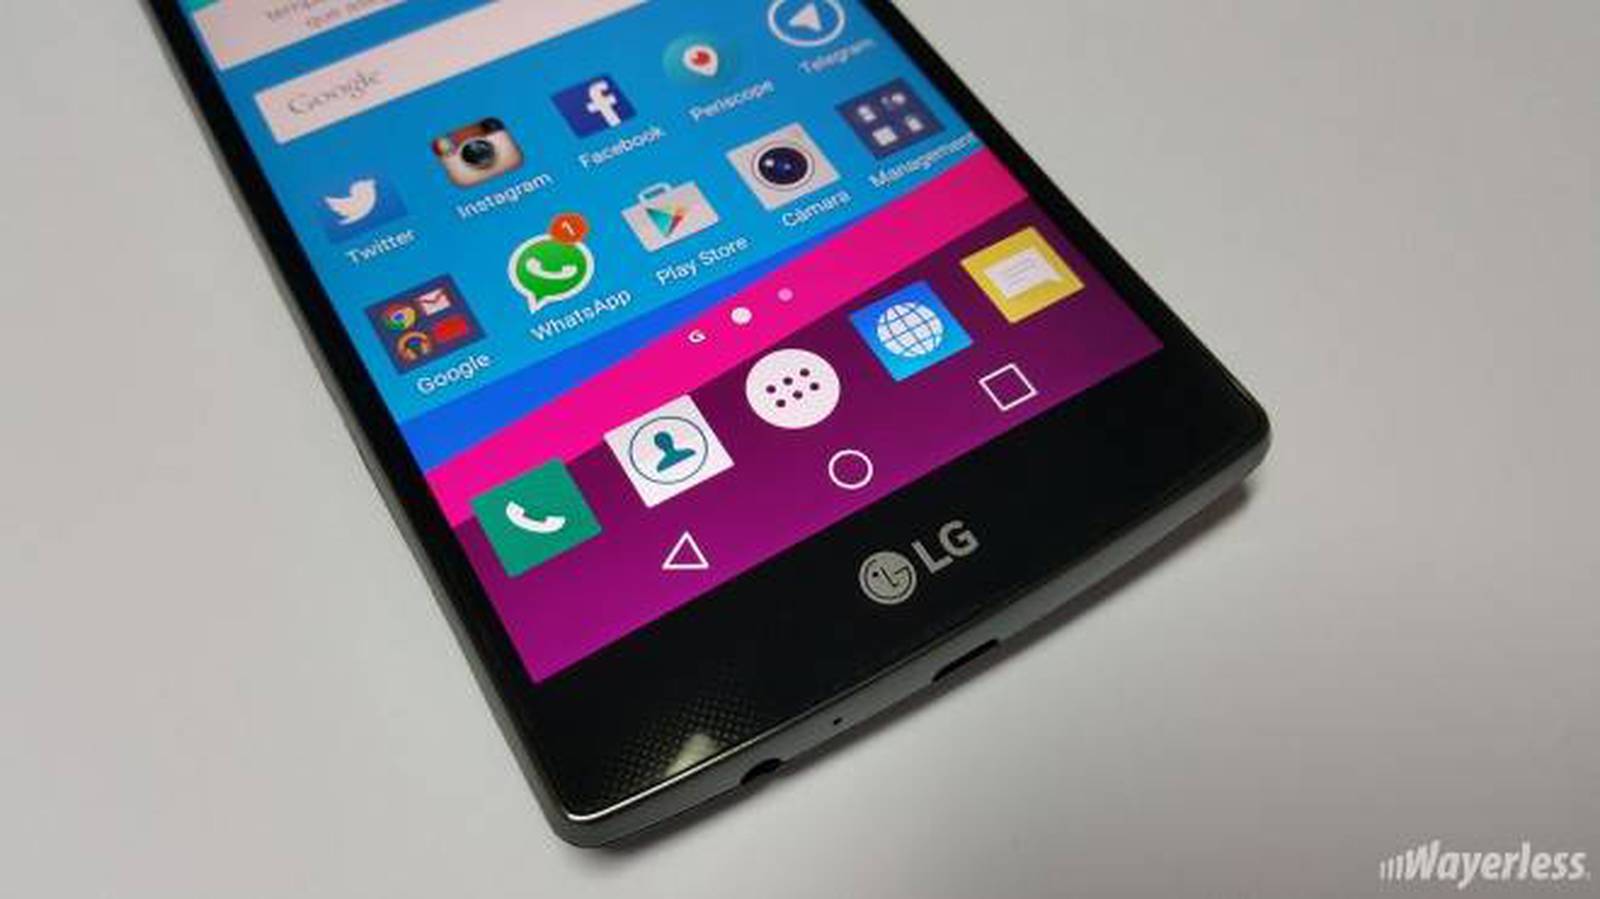 LG presentará un smartphone el 21 de septiembre